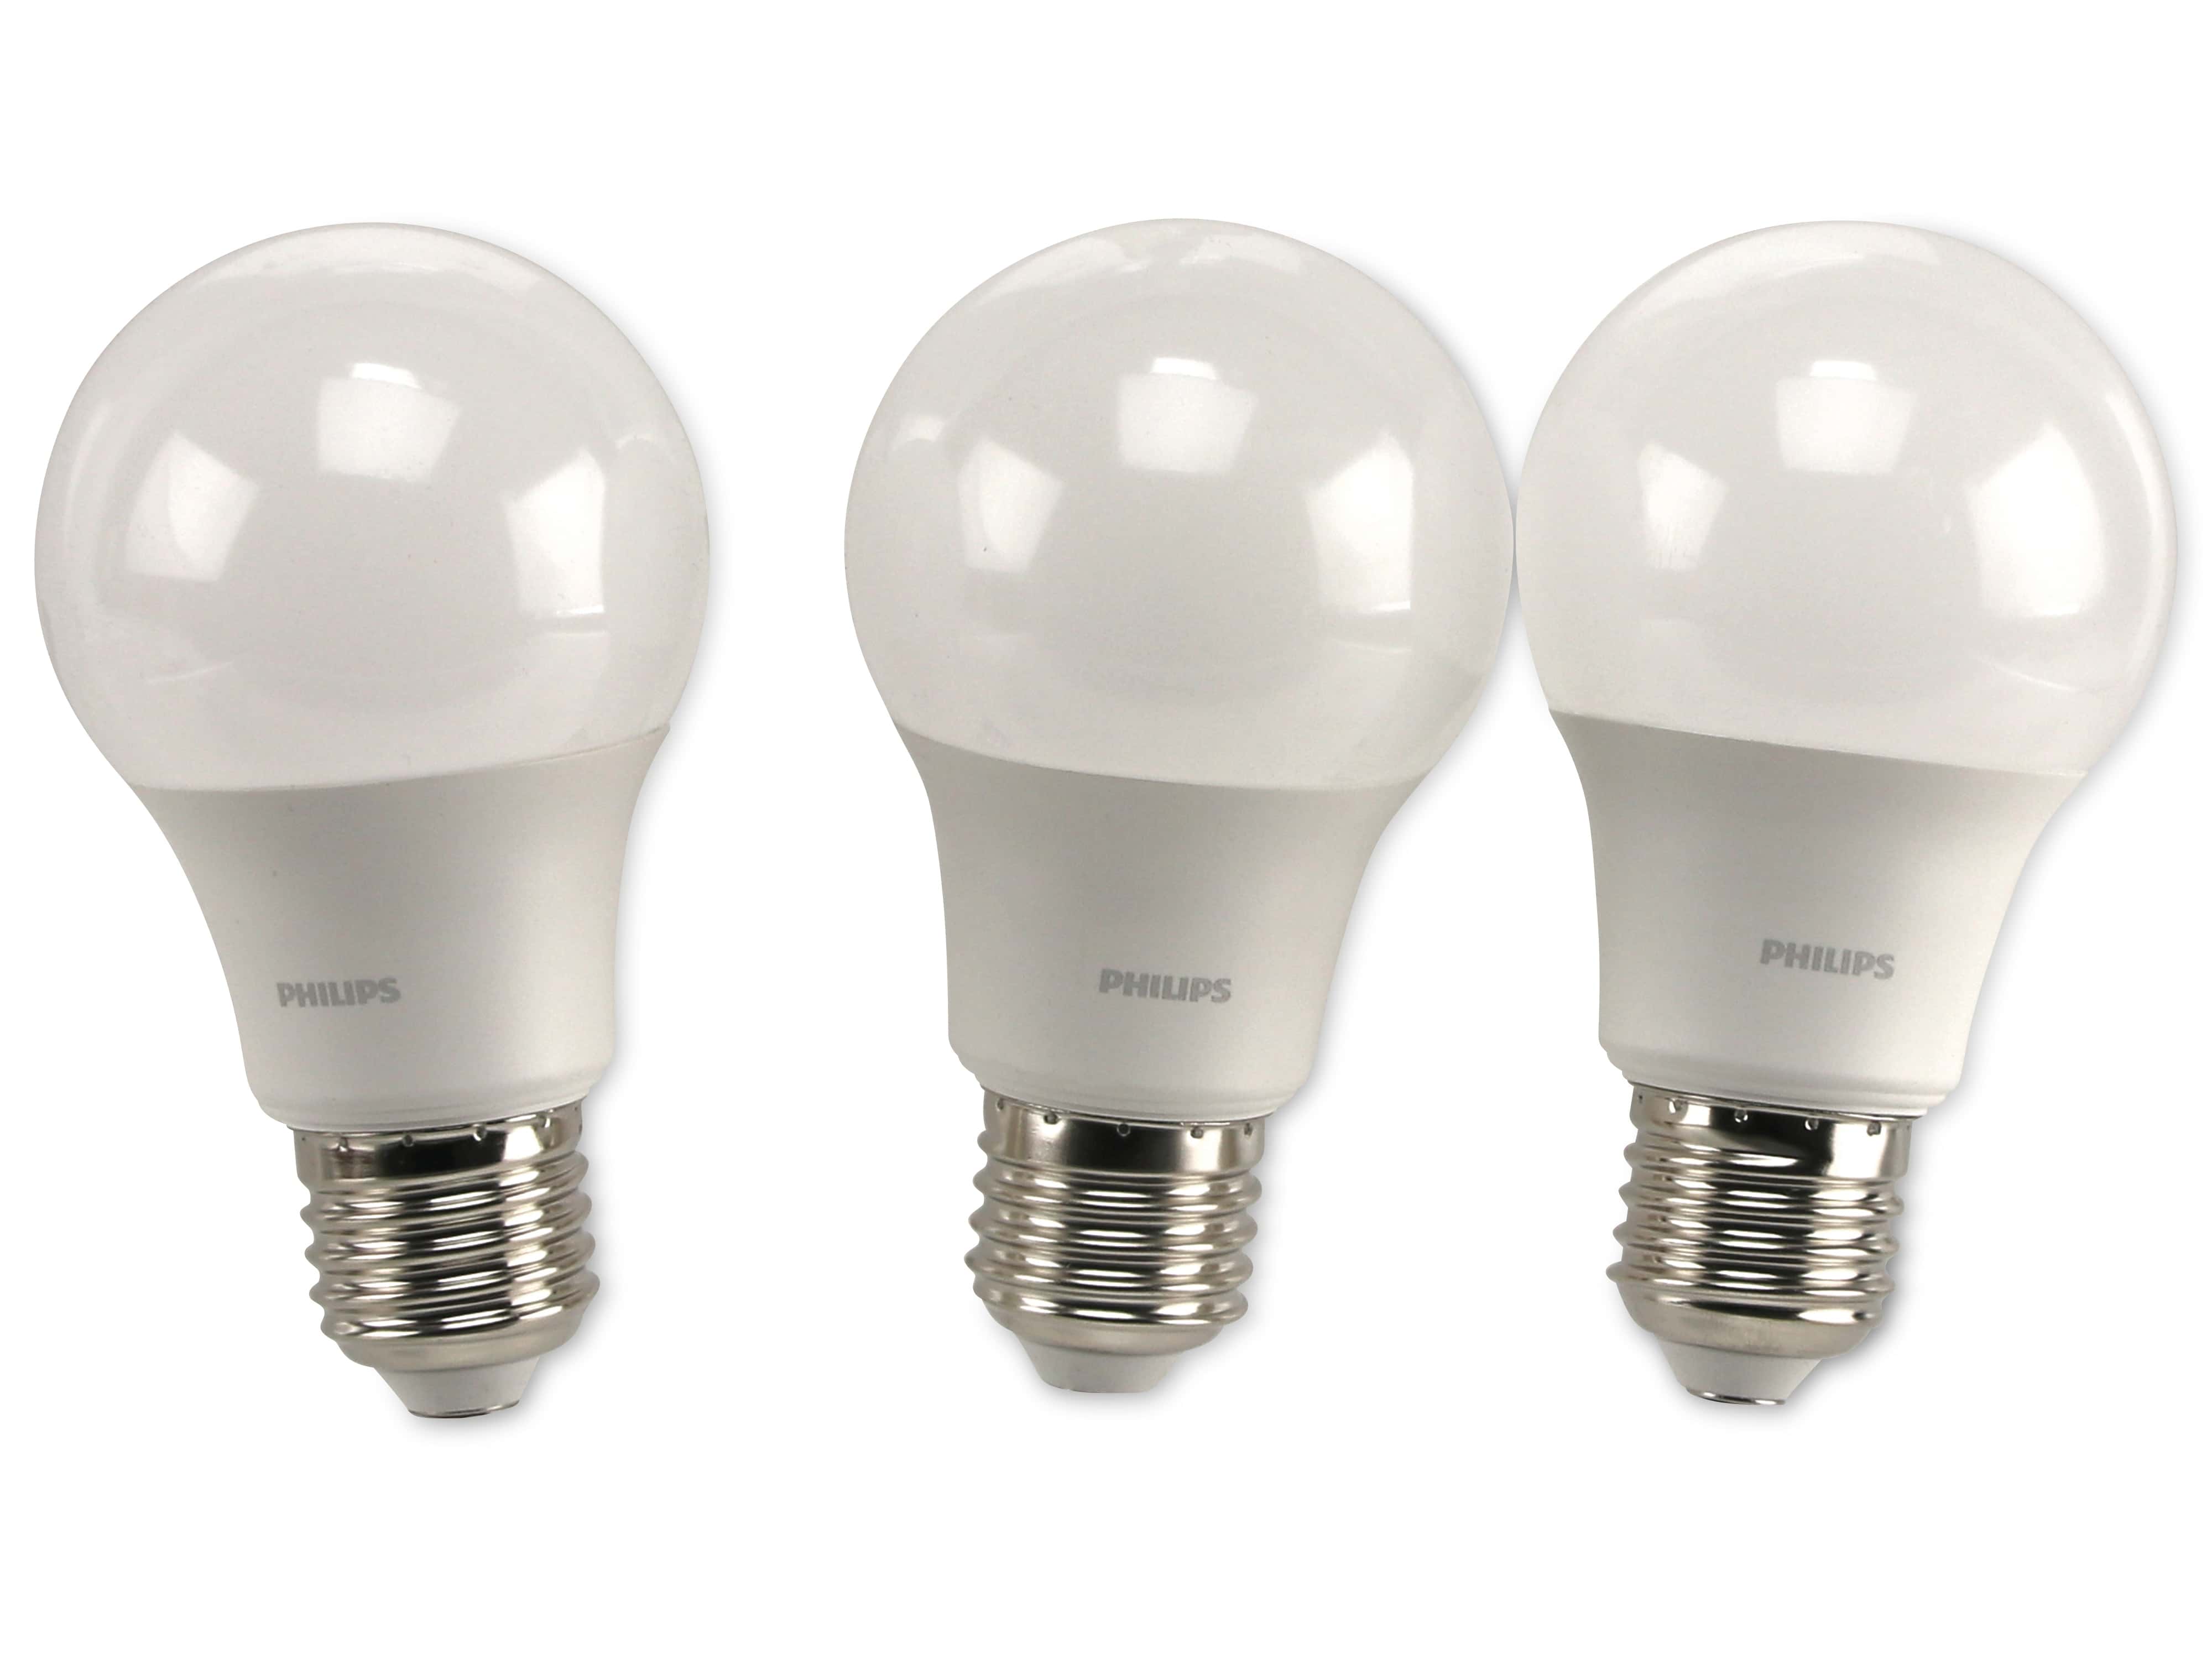 PHILIPS LED-Lampe E27, EEK: F, 5,5 W, warmweiß, 3er-Set